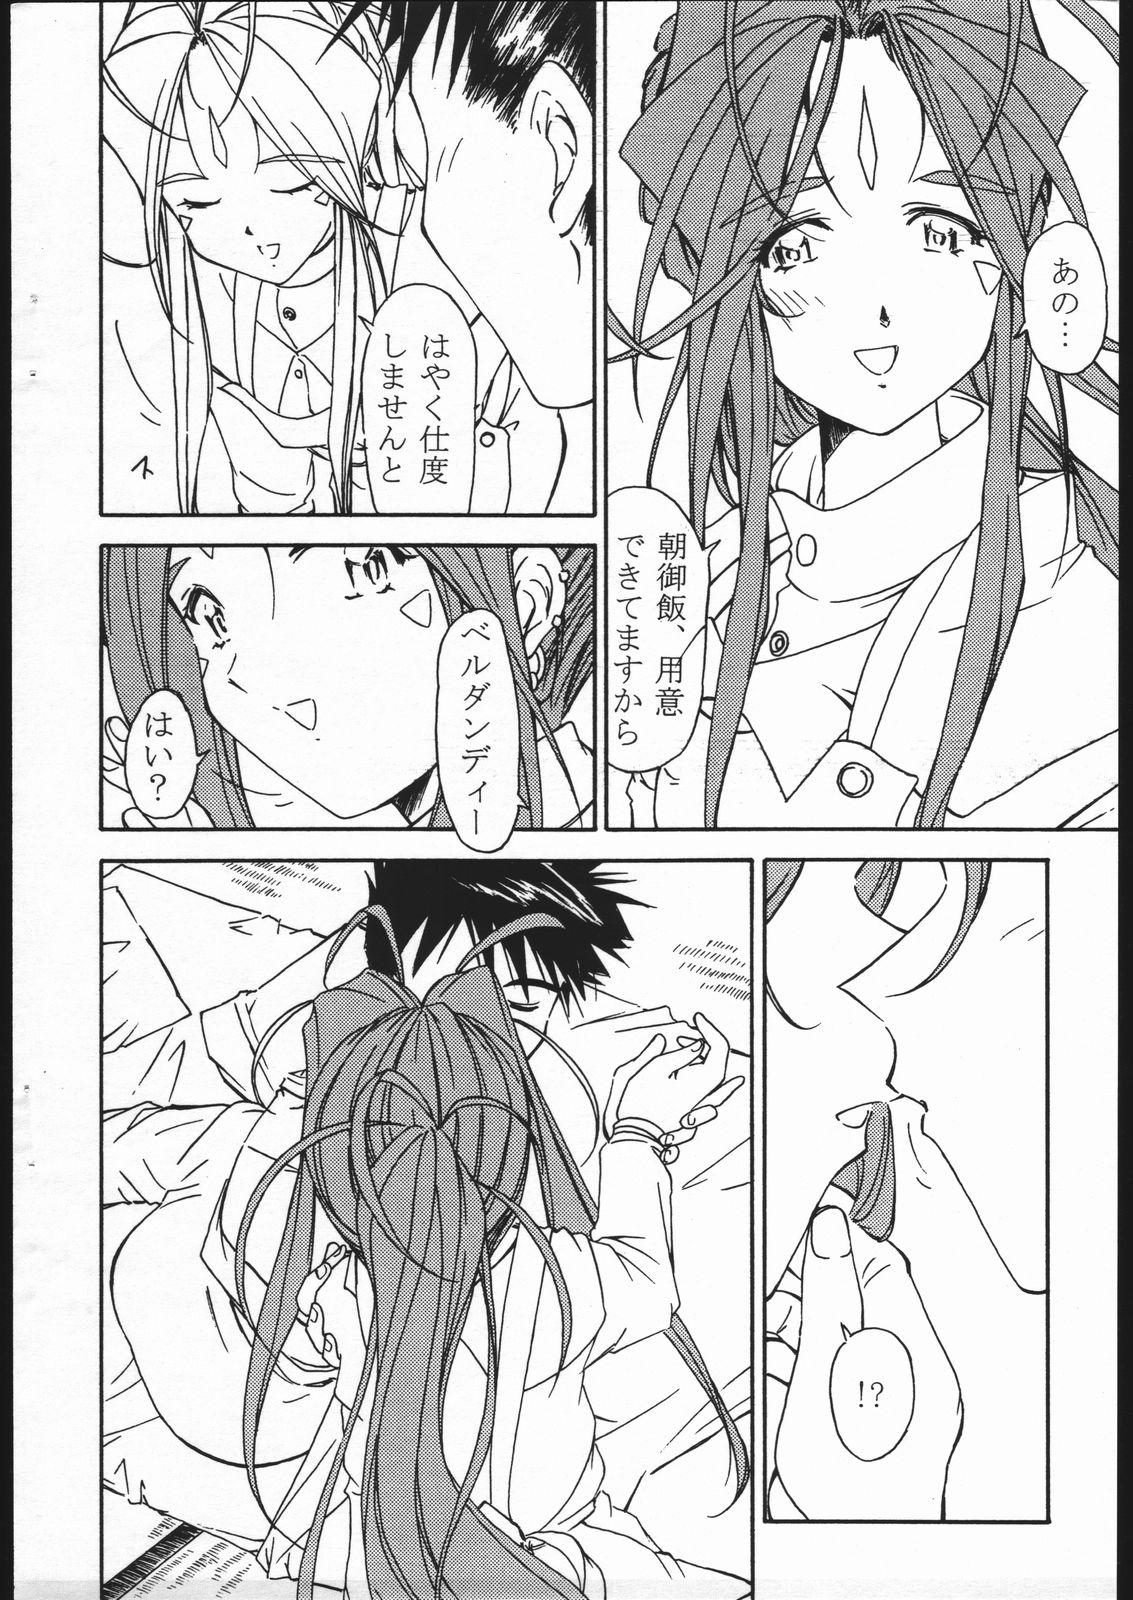 Bigbutt Ohayou Gozaimasu! Megami-sama! - Ah my goddess Alone - Page 3